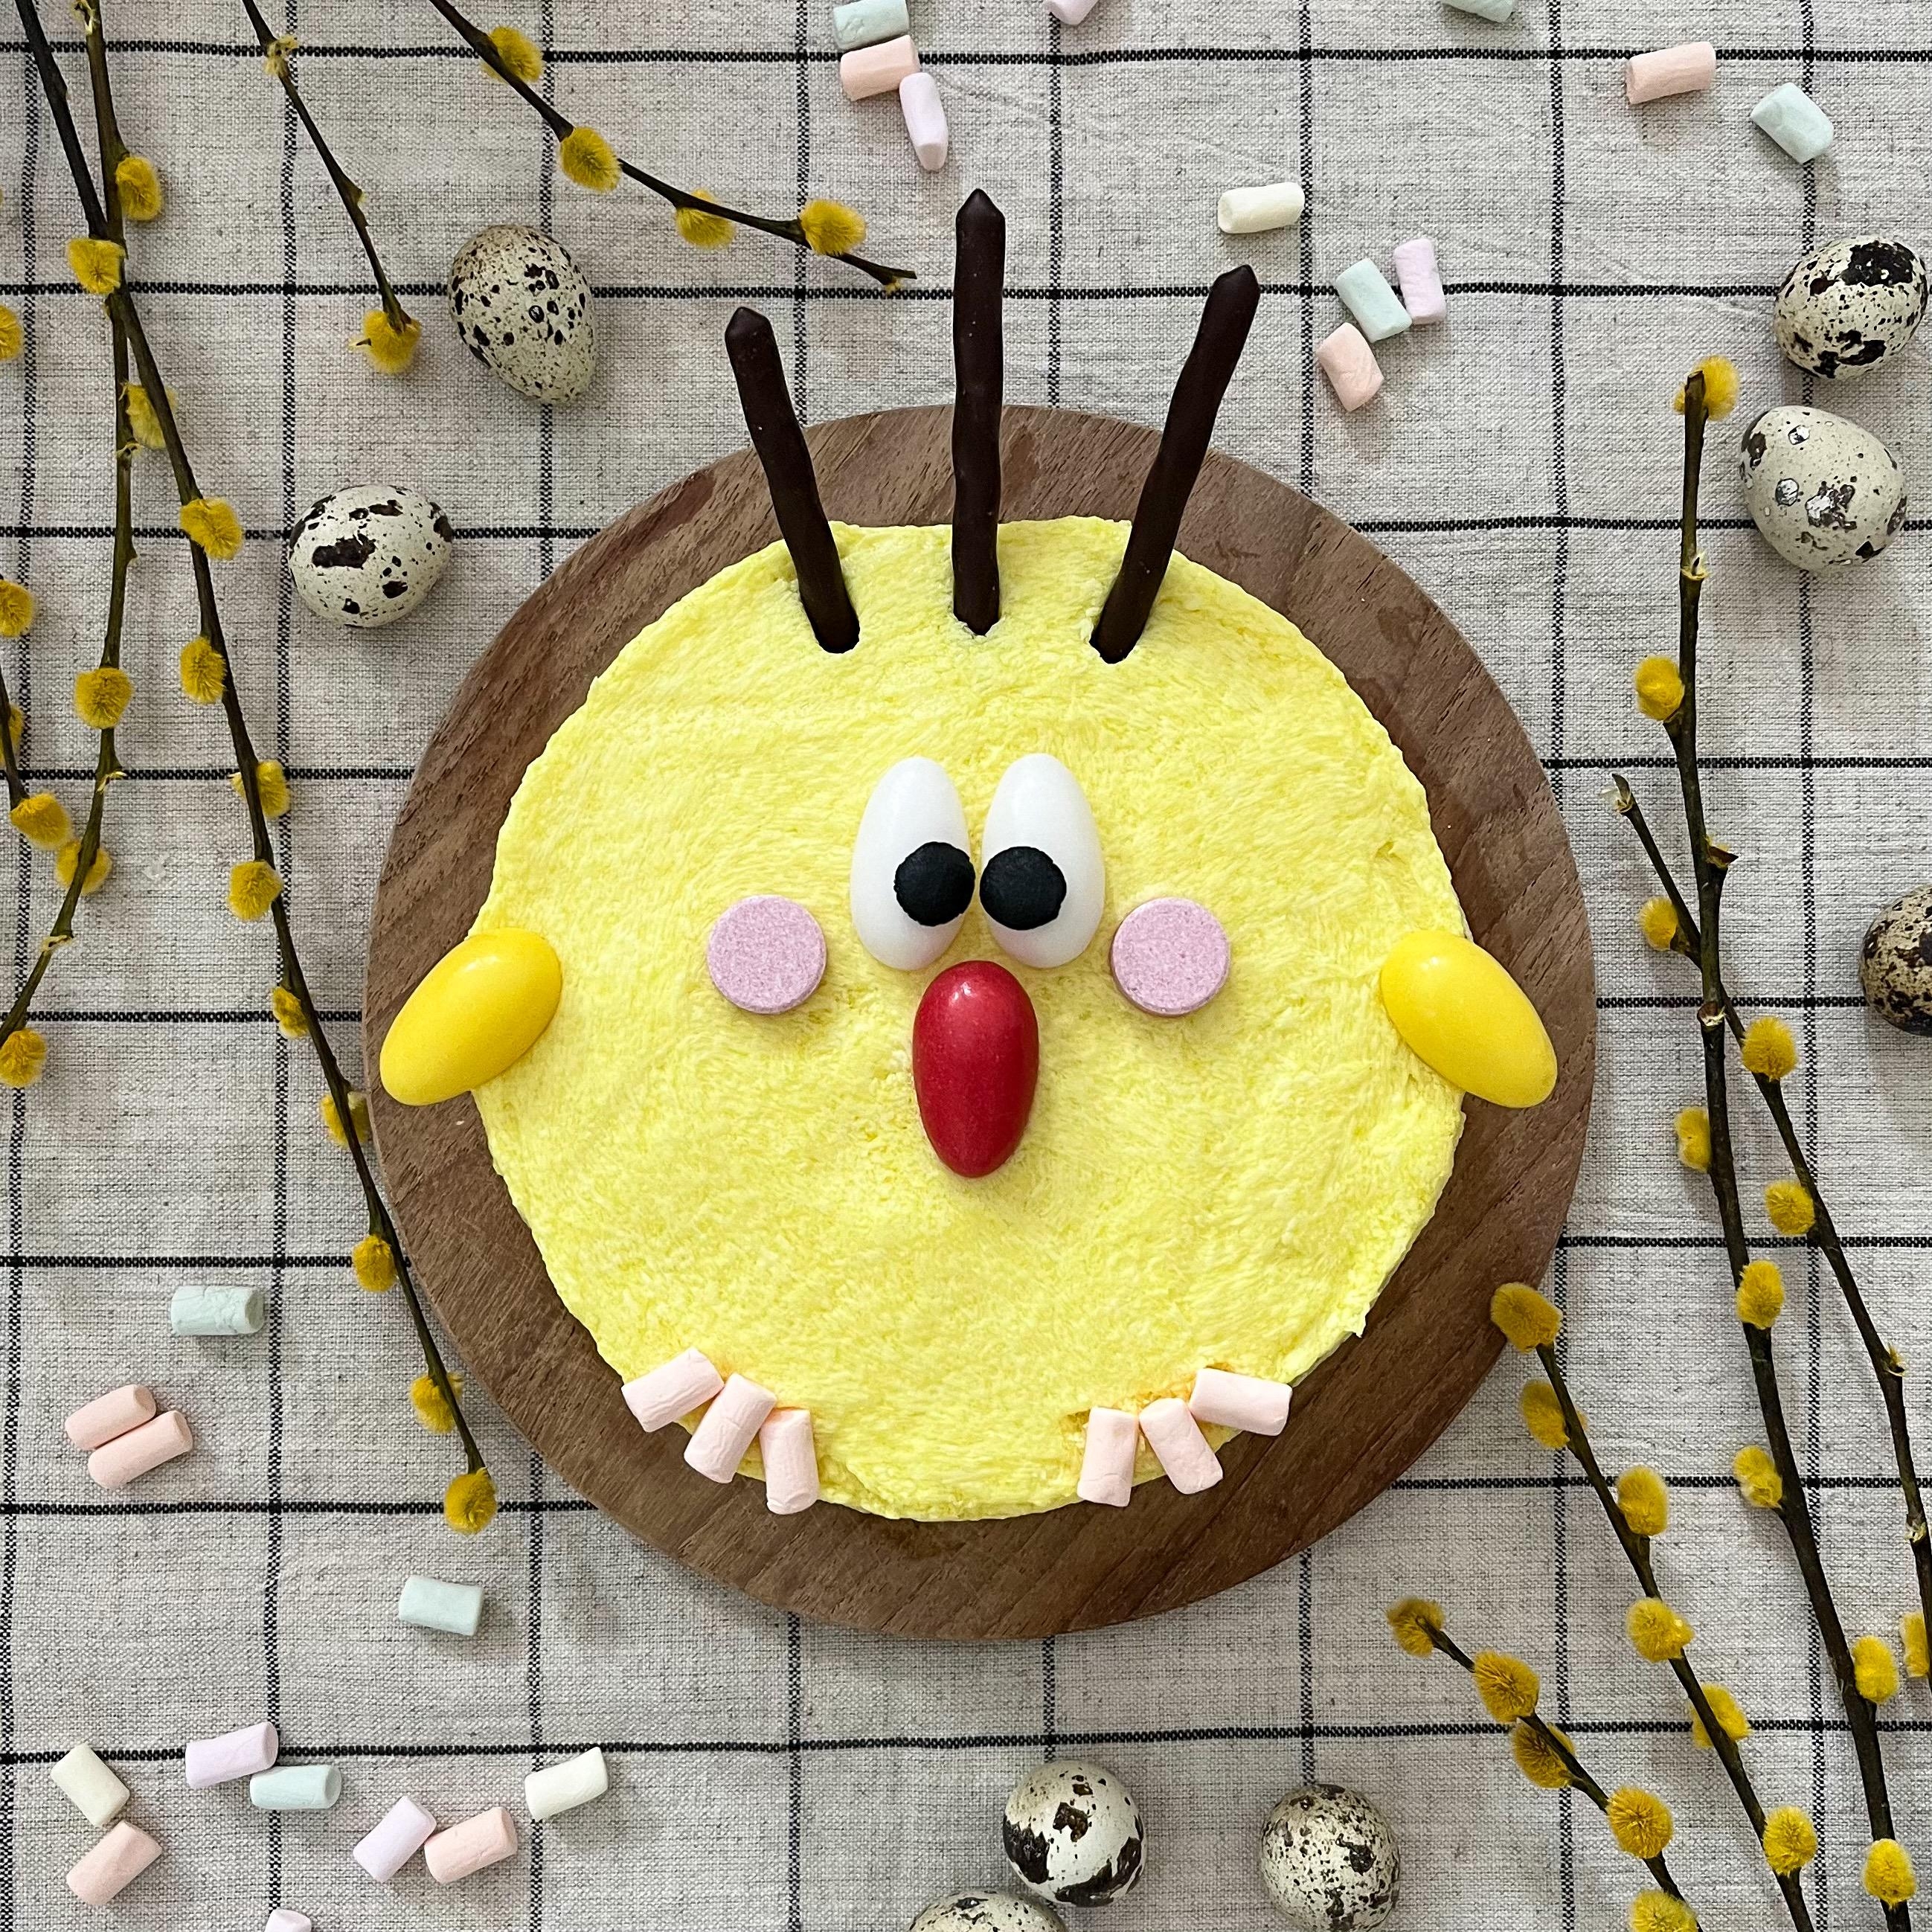 Ein kleine Idee für ein super schnelles Ostertörtchen - TK-Torte, gelb gefärbte Buttercreme und ein paar Süßigkeiten 